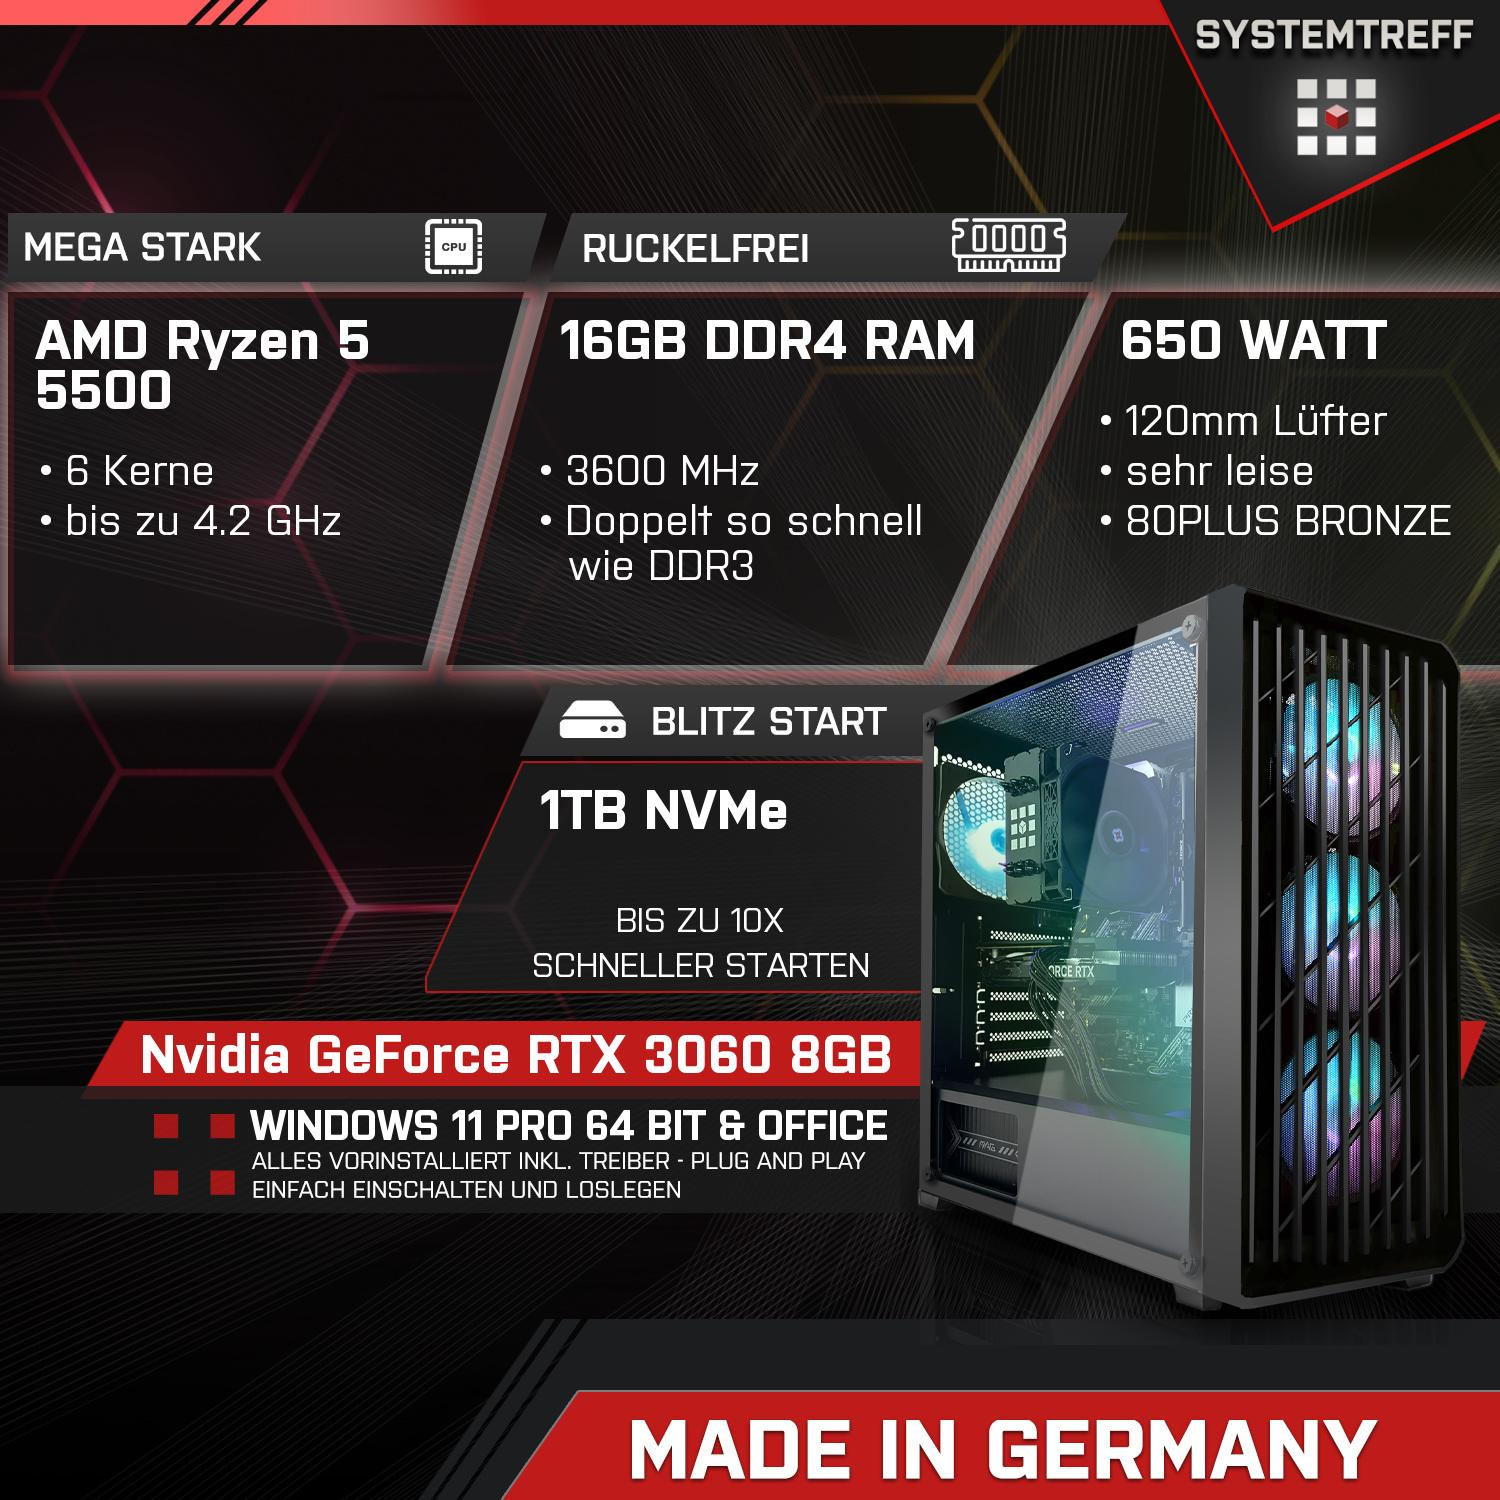 Nvidia SYSTEMTREFF 1000 GDDR6, Gaming 8 Ryzen AMD Komplett mit RTX 16 GB 5 RAM, GeForce 3060 8GB GB 5500, mSSD, GB Komplett 5500 Prozessor, PC